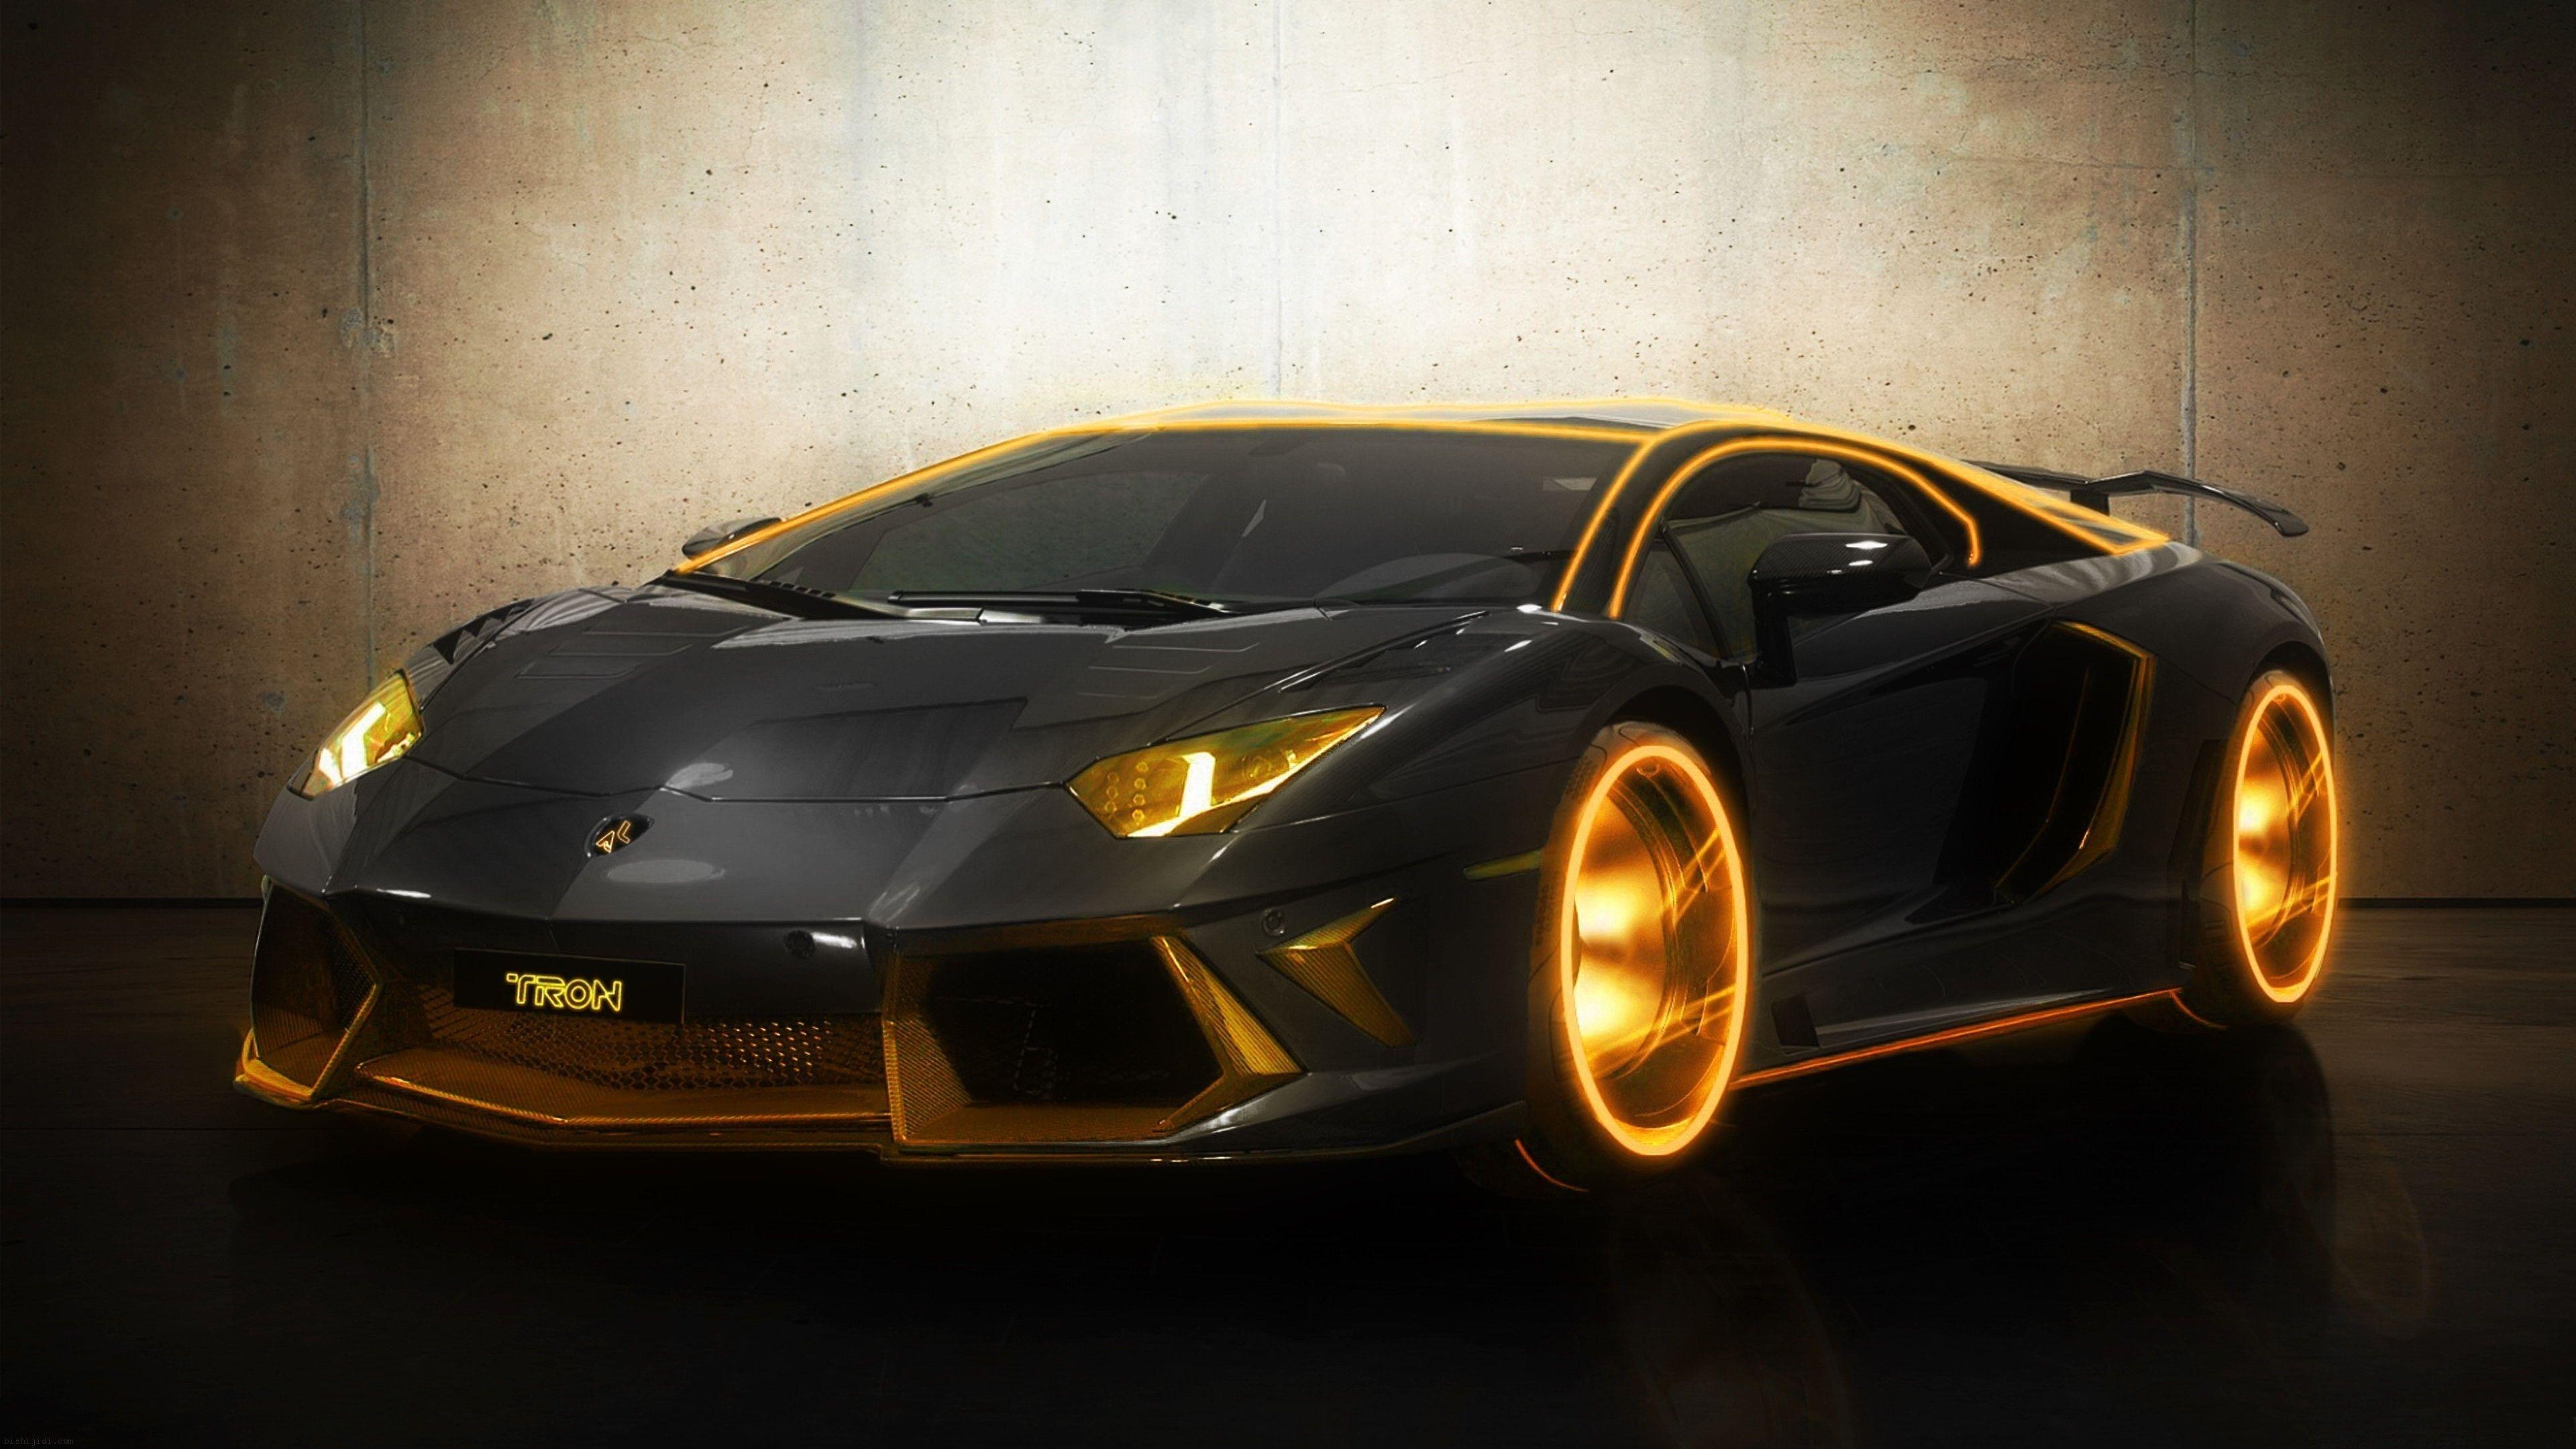 Siêu xe Lamborghini màu vàng là biểu tượng của sự giàu có và đẳng cấp. Nếu bạn muốn thưởng thức một siêu xe đích thực, hãy xem hình ảnh về Lamborghini màu vàng.